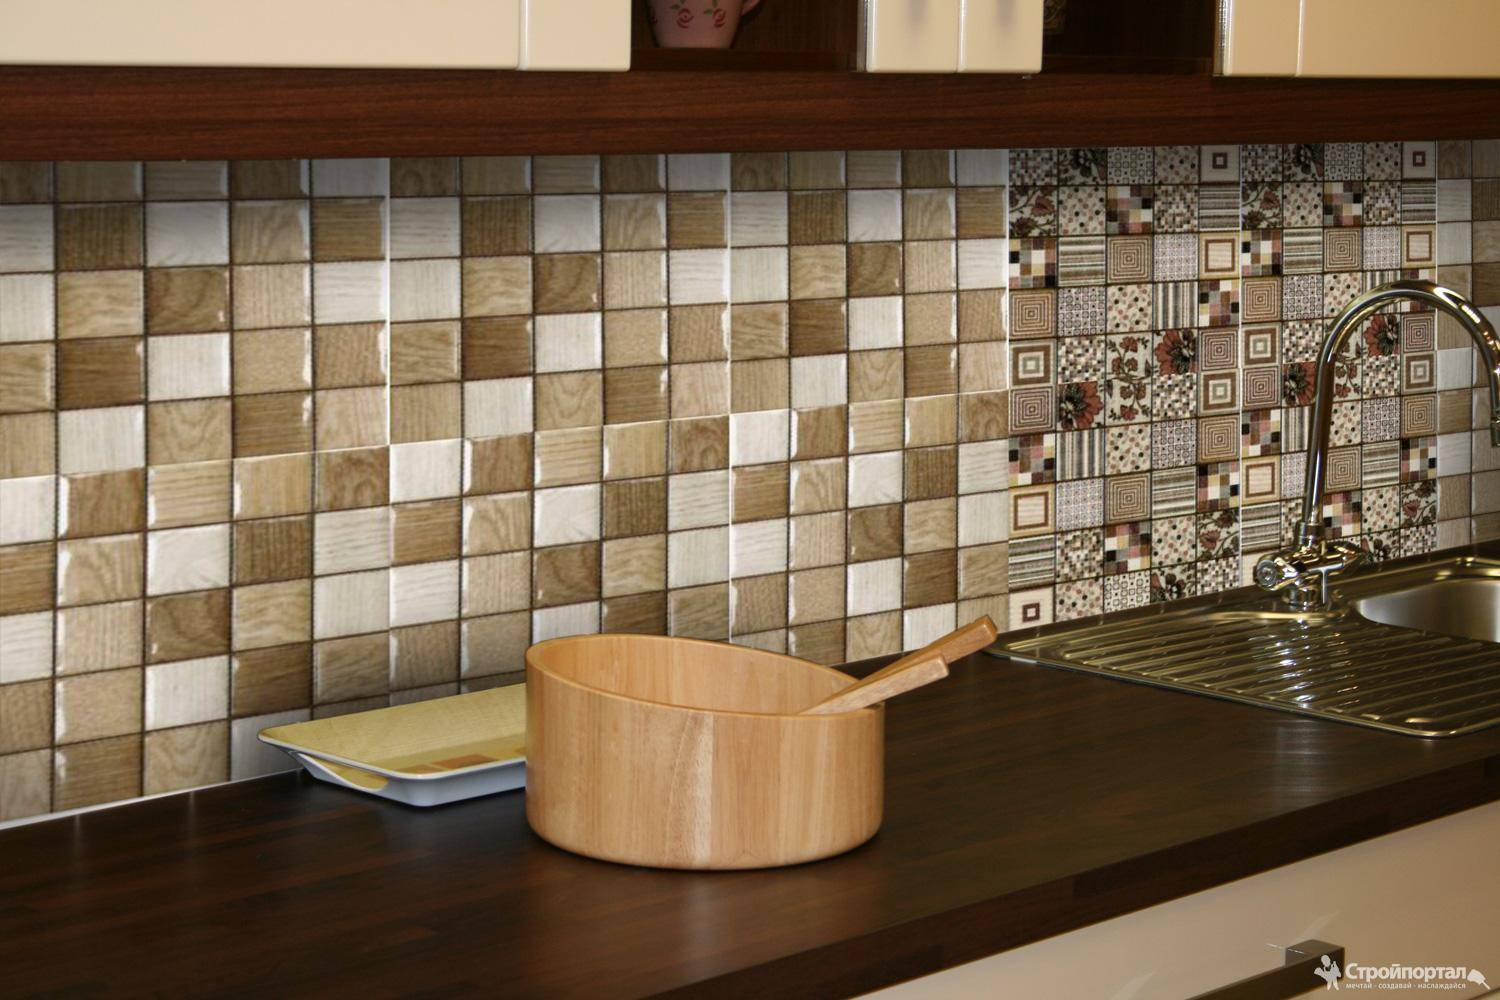 Кафельная плитка для фартука. Rocersa Sequoia 31*60 см. Фартук для кухни «мозаика». Плитка для кухни на фартук. Плитка мозаика для кухни.